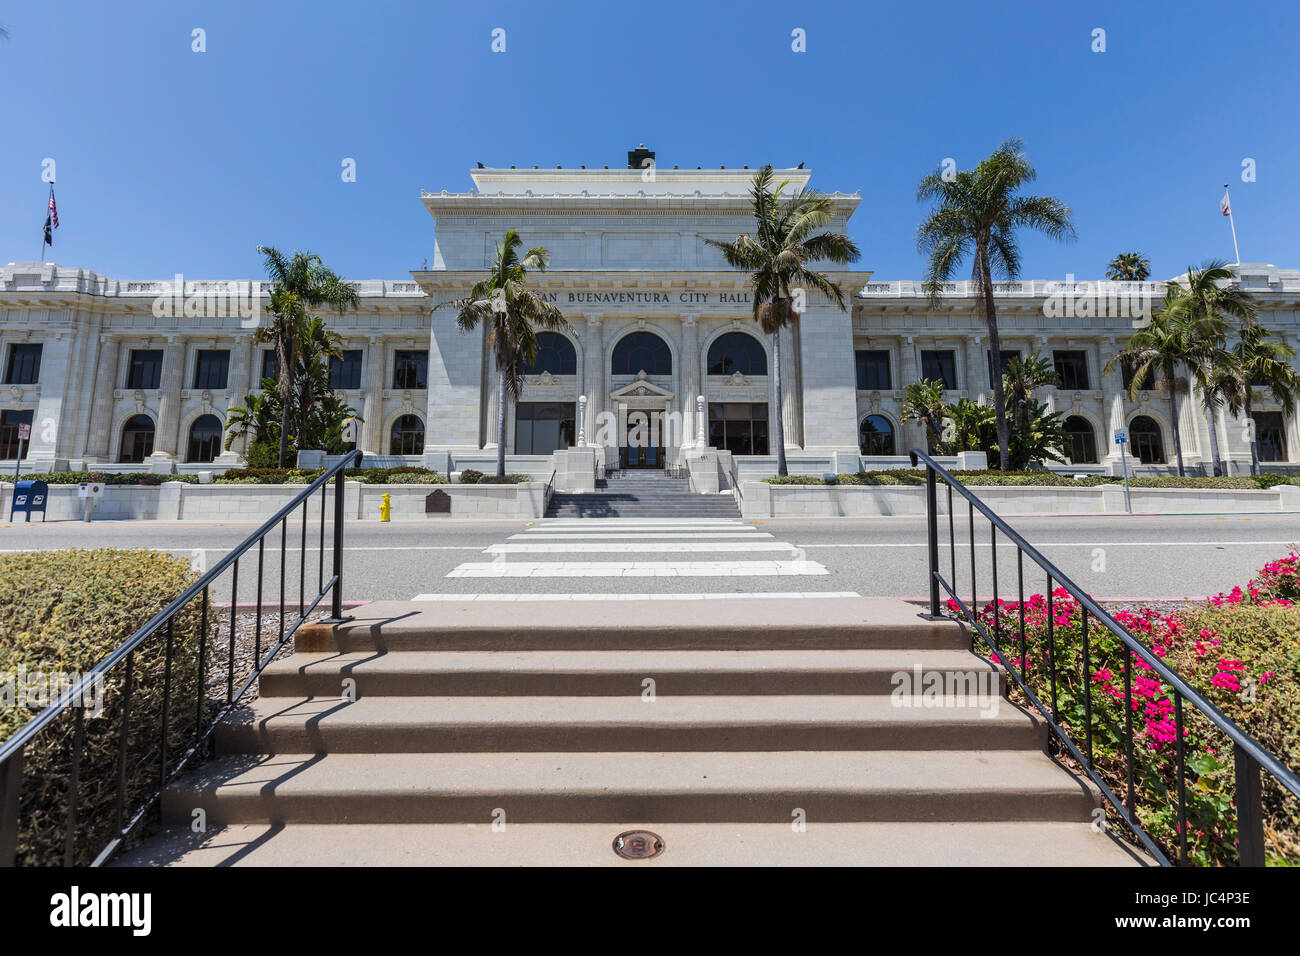 Ventura, Kalifornien, USA - 11. Juni 2017: Front Eingang zum historischen Ventura Rathaus Gebäude in Südkalifornien. Stockfoto